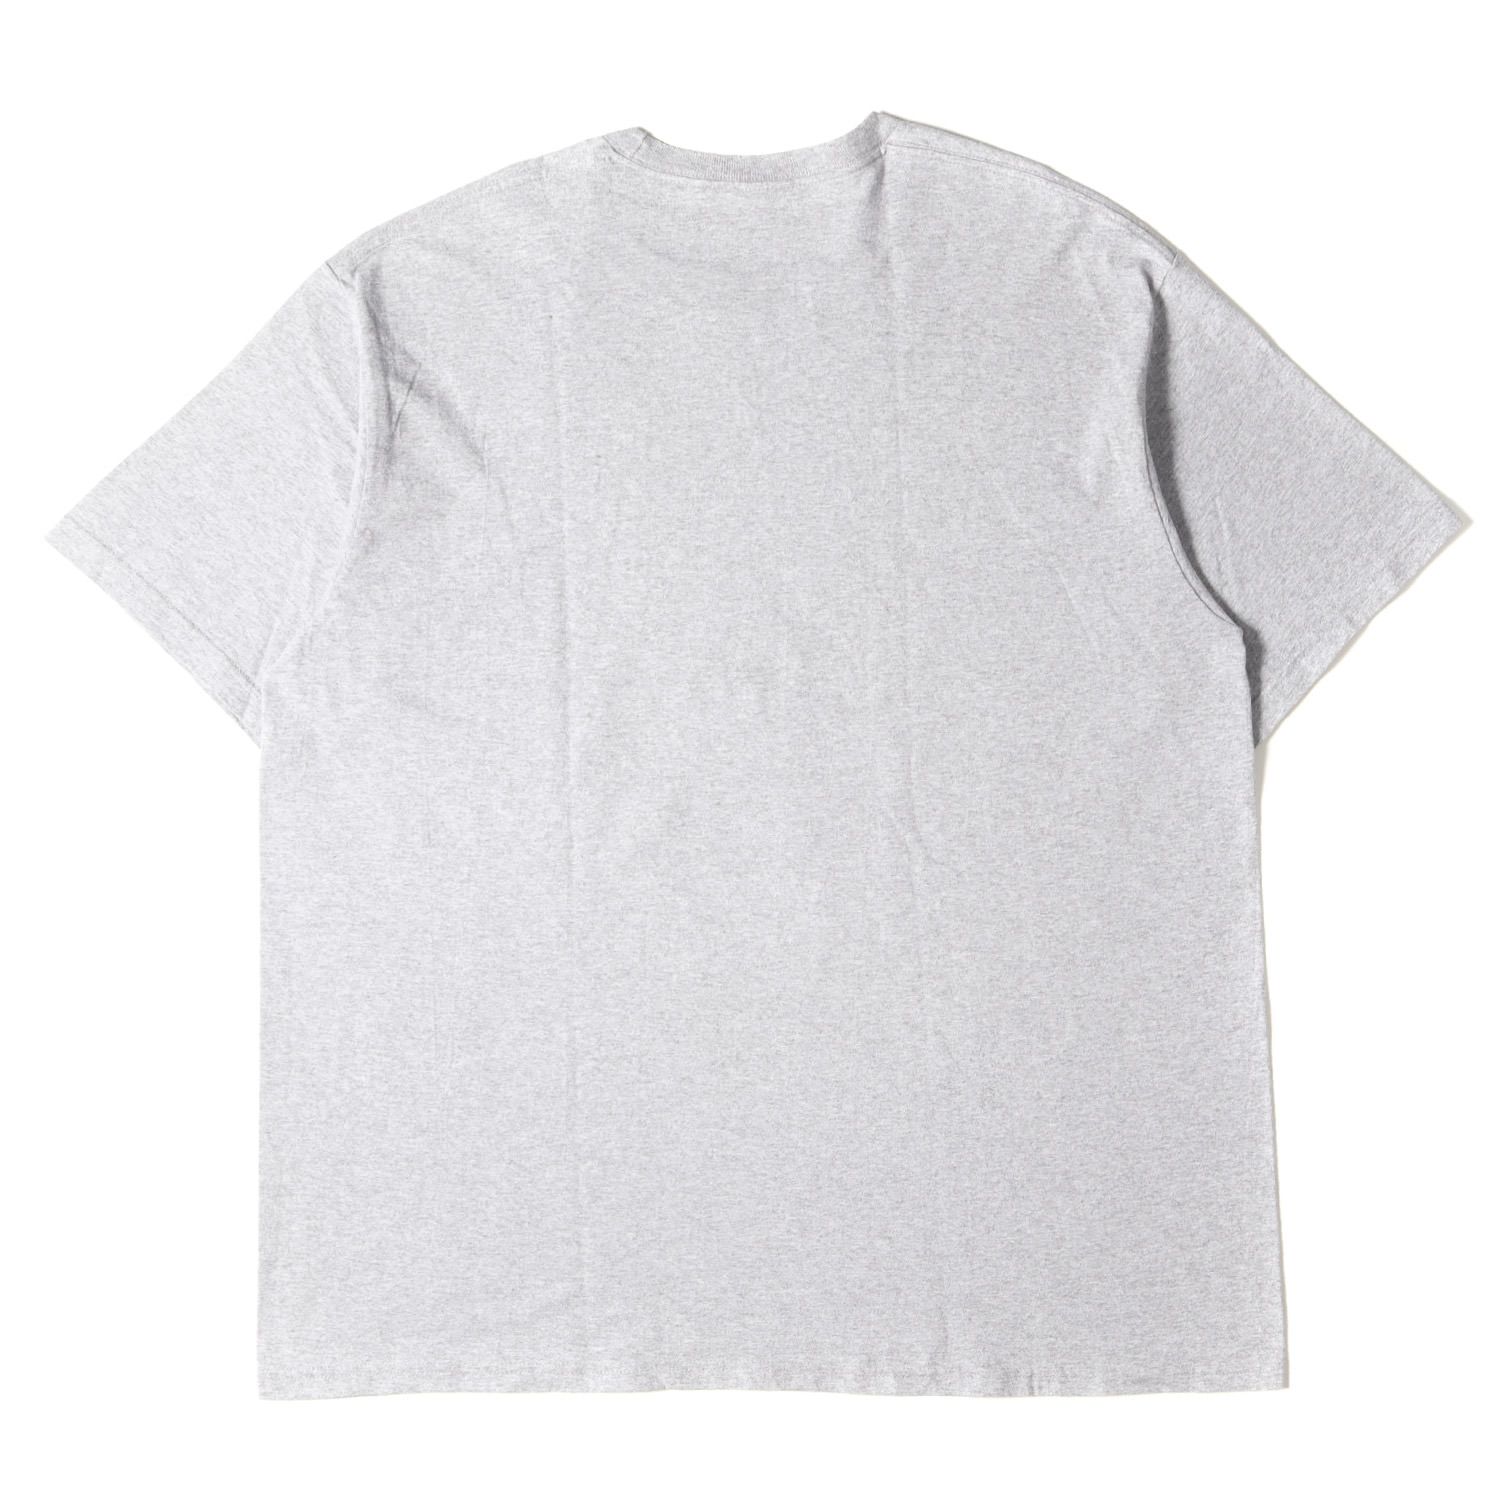 美品 Supreme シュプリーム Tシャツ サイズ:XL 23SS Kurt Cobain カート・コバーン フォト クルーネック 半袖 Tシャツ  Kurt Cobain Tee ヘザーグレー トップス カットソー ブランド